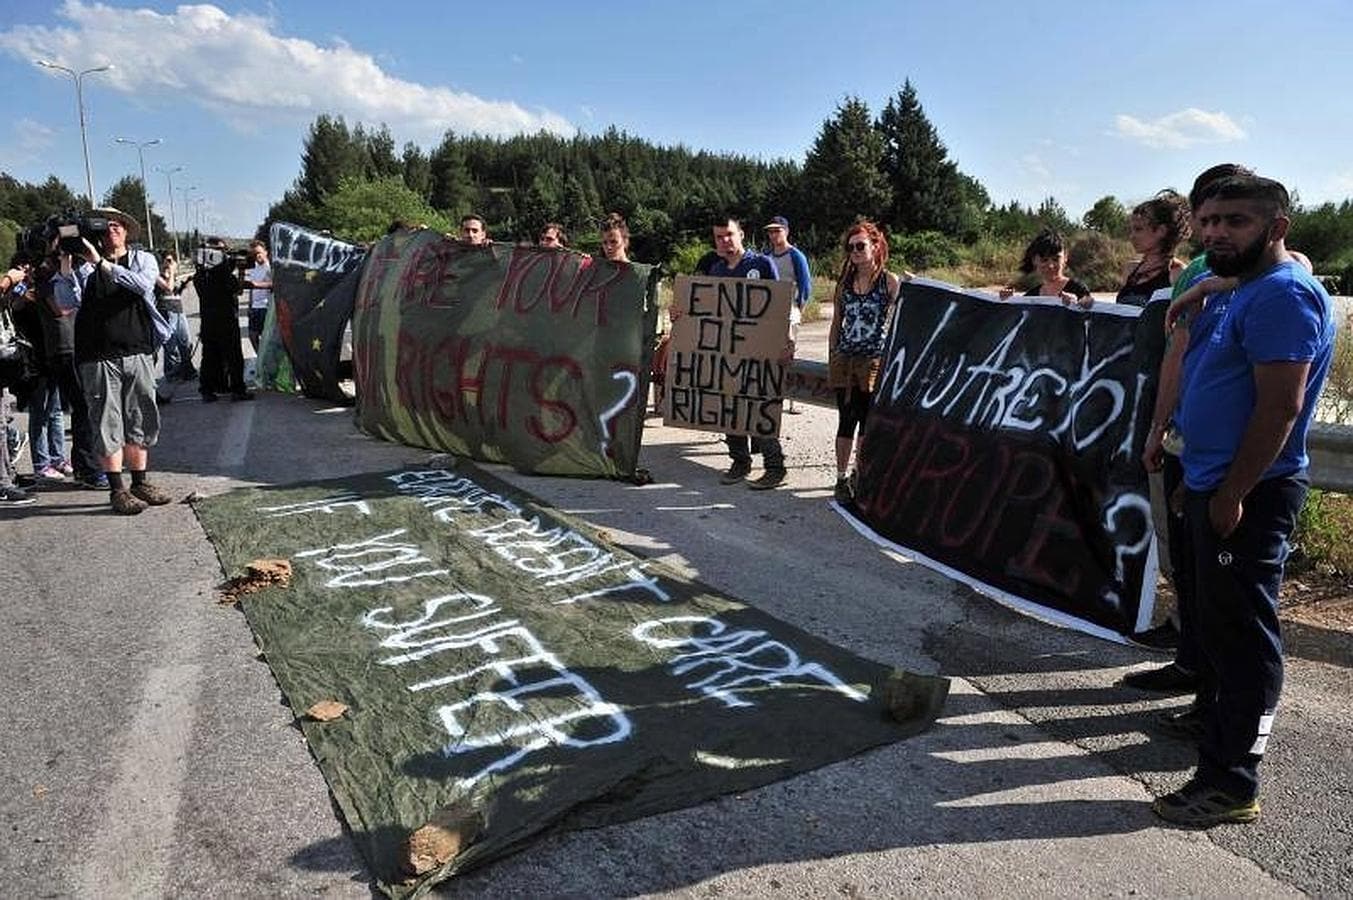 Los grupos solidarios protestan contra la evacuación forzosa de migrantes y refugiados de un campamento improvisado